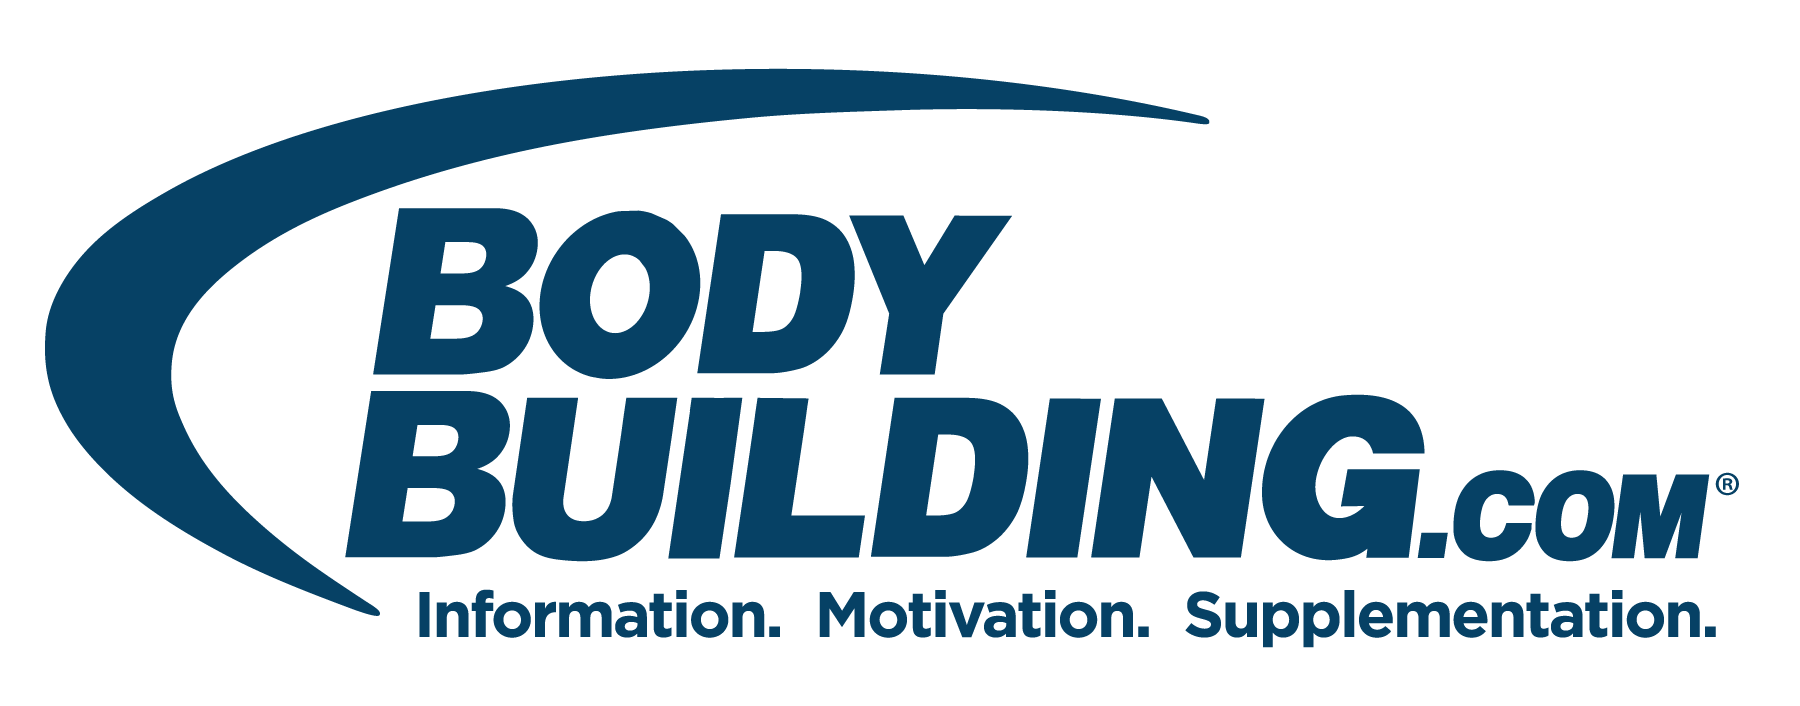 Bodybuilding.com Logo - Bodybuilding.com logo.png